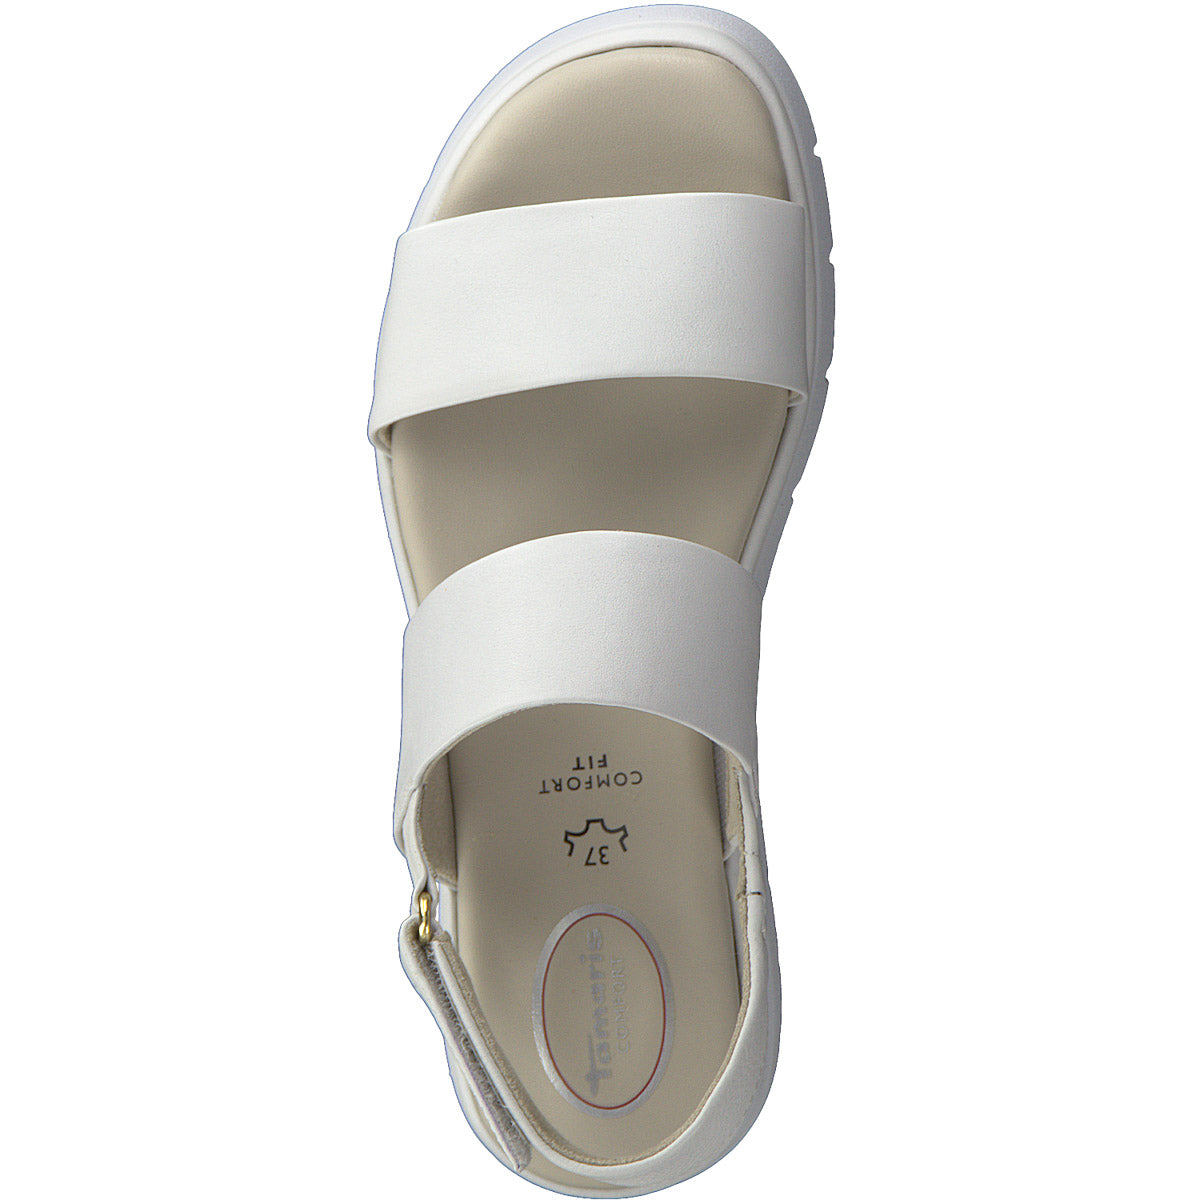 Summer Black Gold BUCKLE Back Straps Cool Sandals WOMEN Size 8.5 | eBay